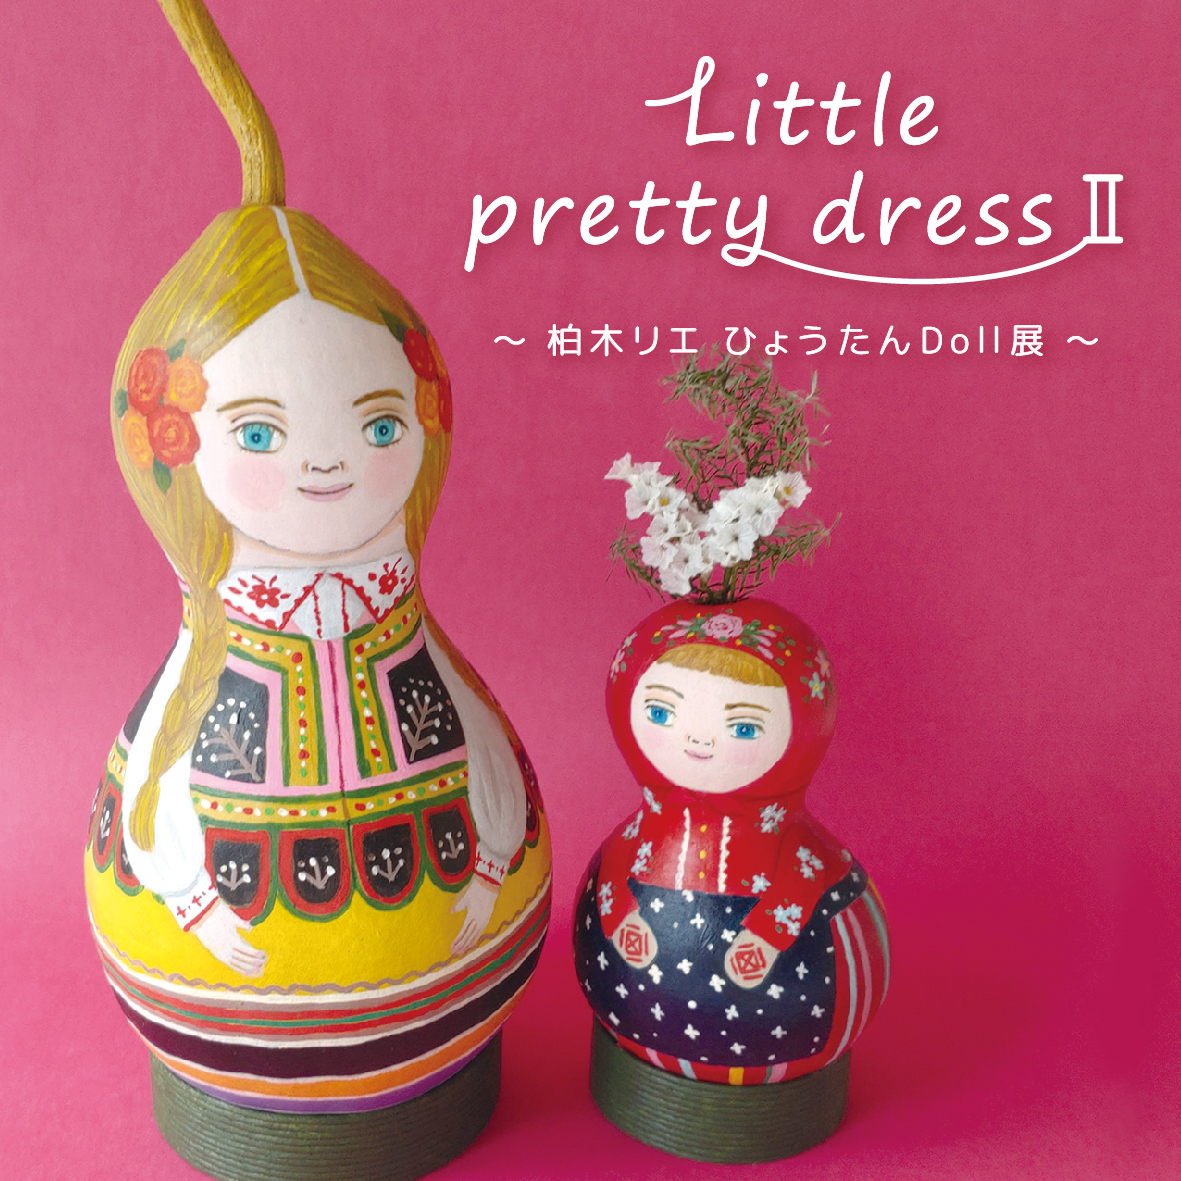 【期間限定】「Little pretty dress Ⅱ」【終了しました】